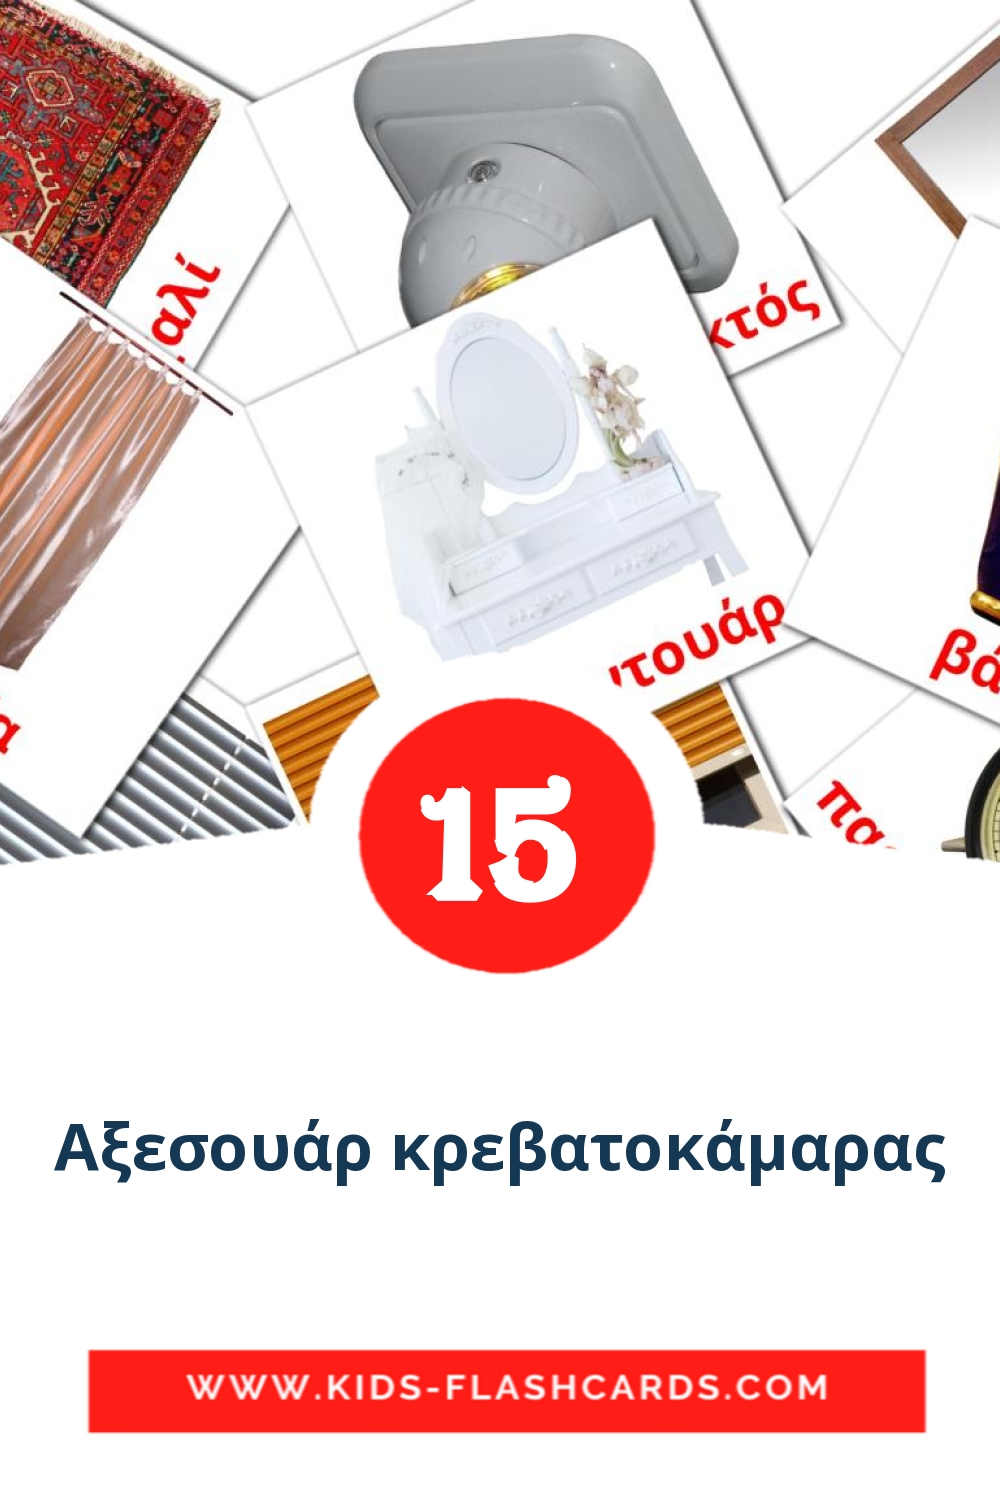 15 Αξεσουάρ κρεβατοκάμαρας Bildkarten für den Kindergarten auf Griechisch